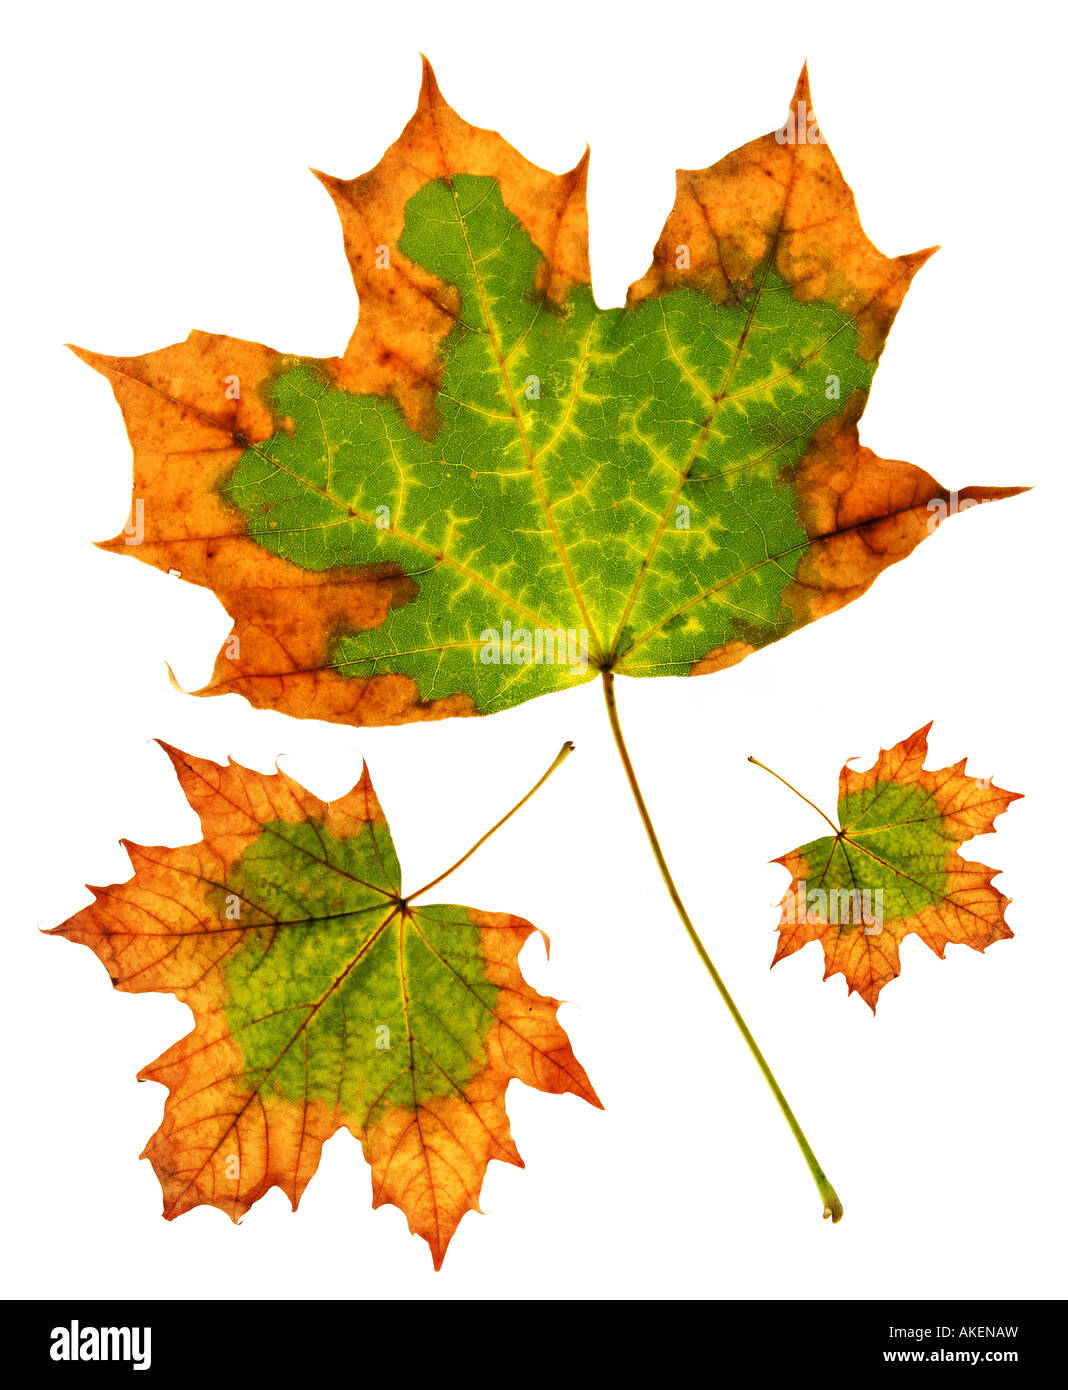 Maple leaf group isolated on white background Stock Photo